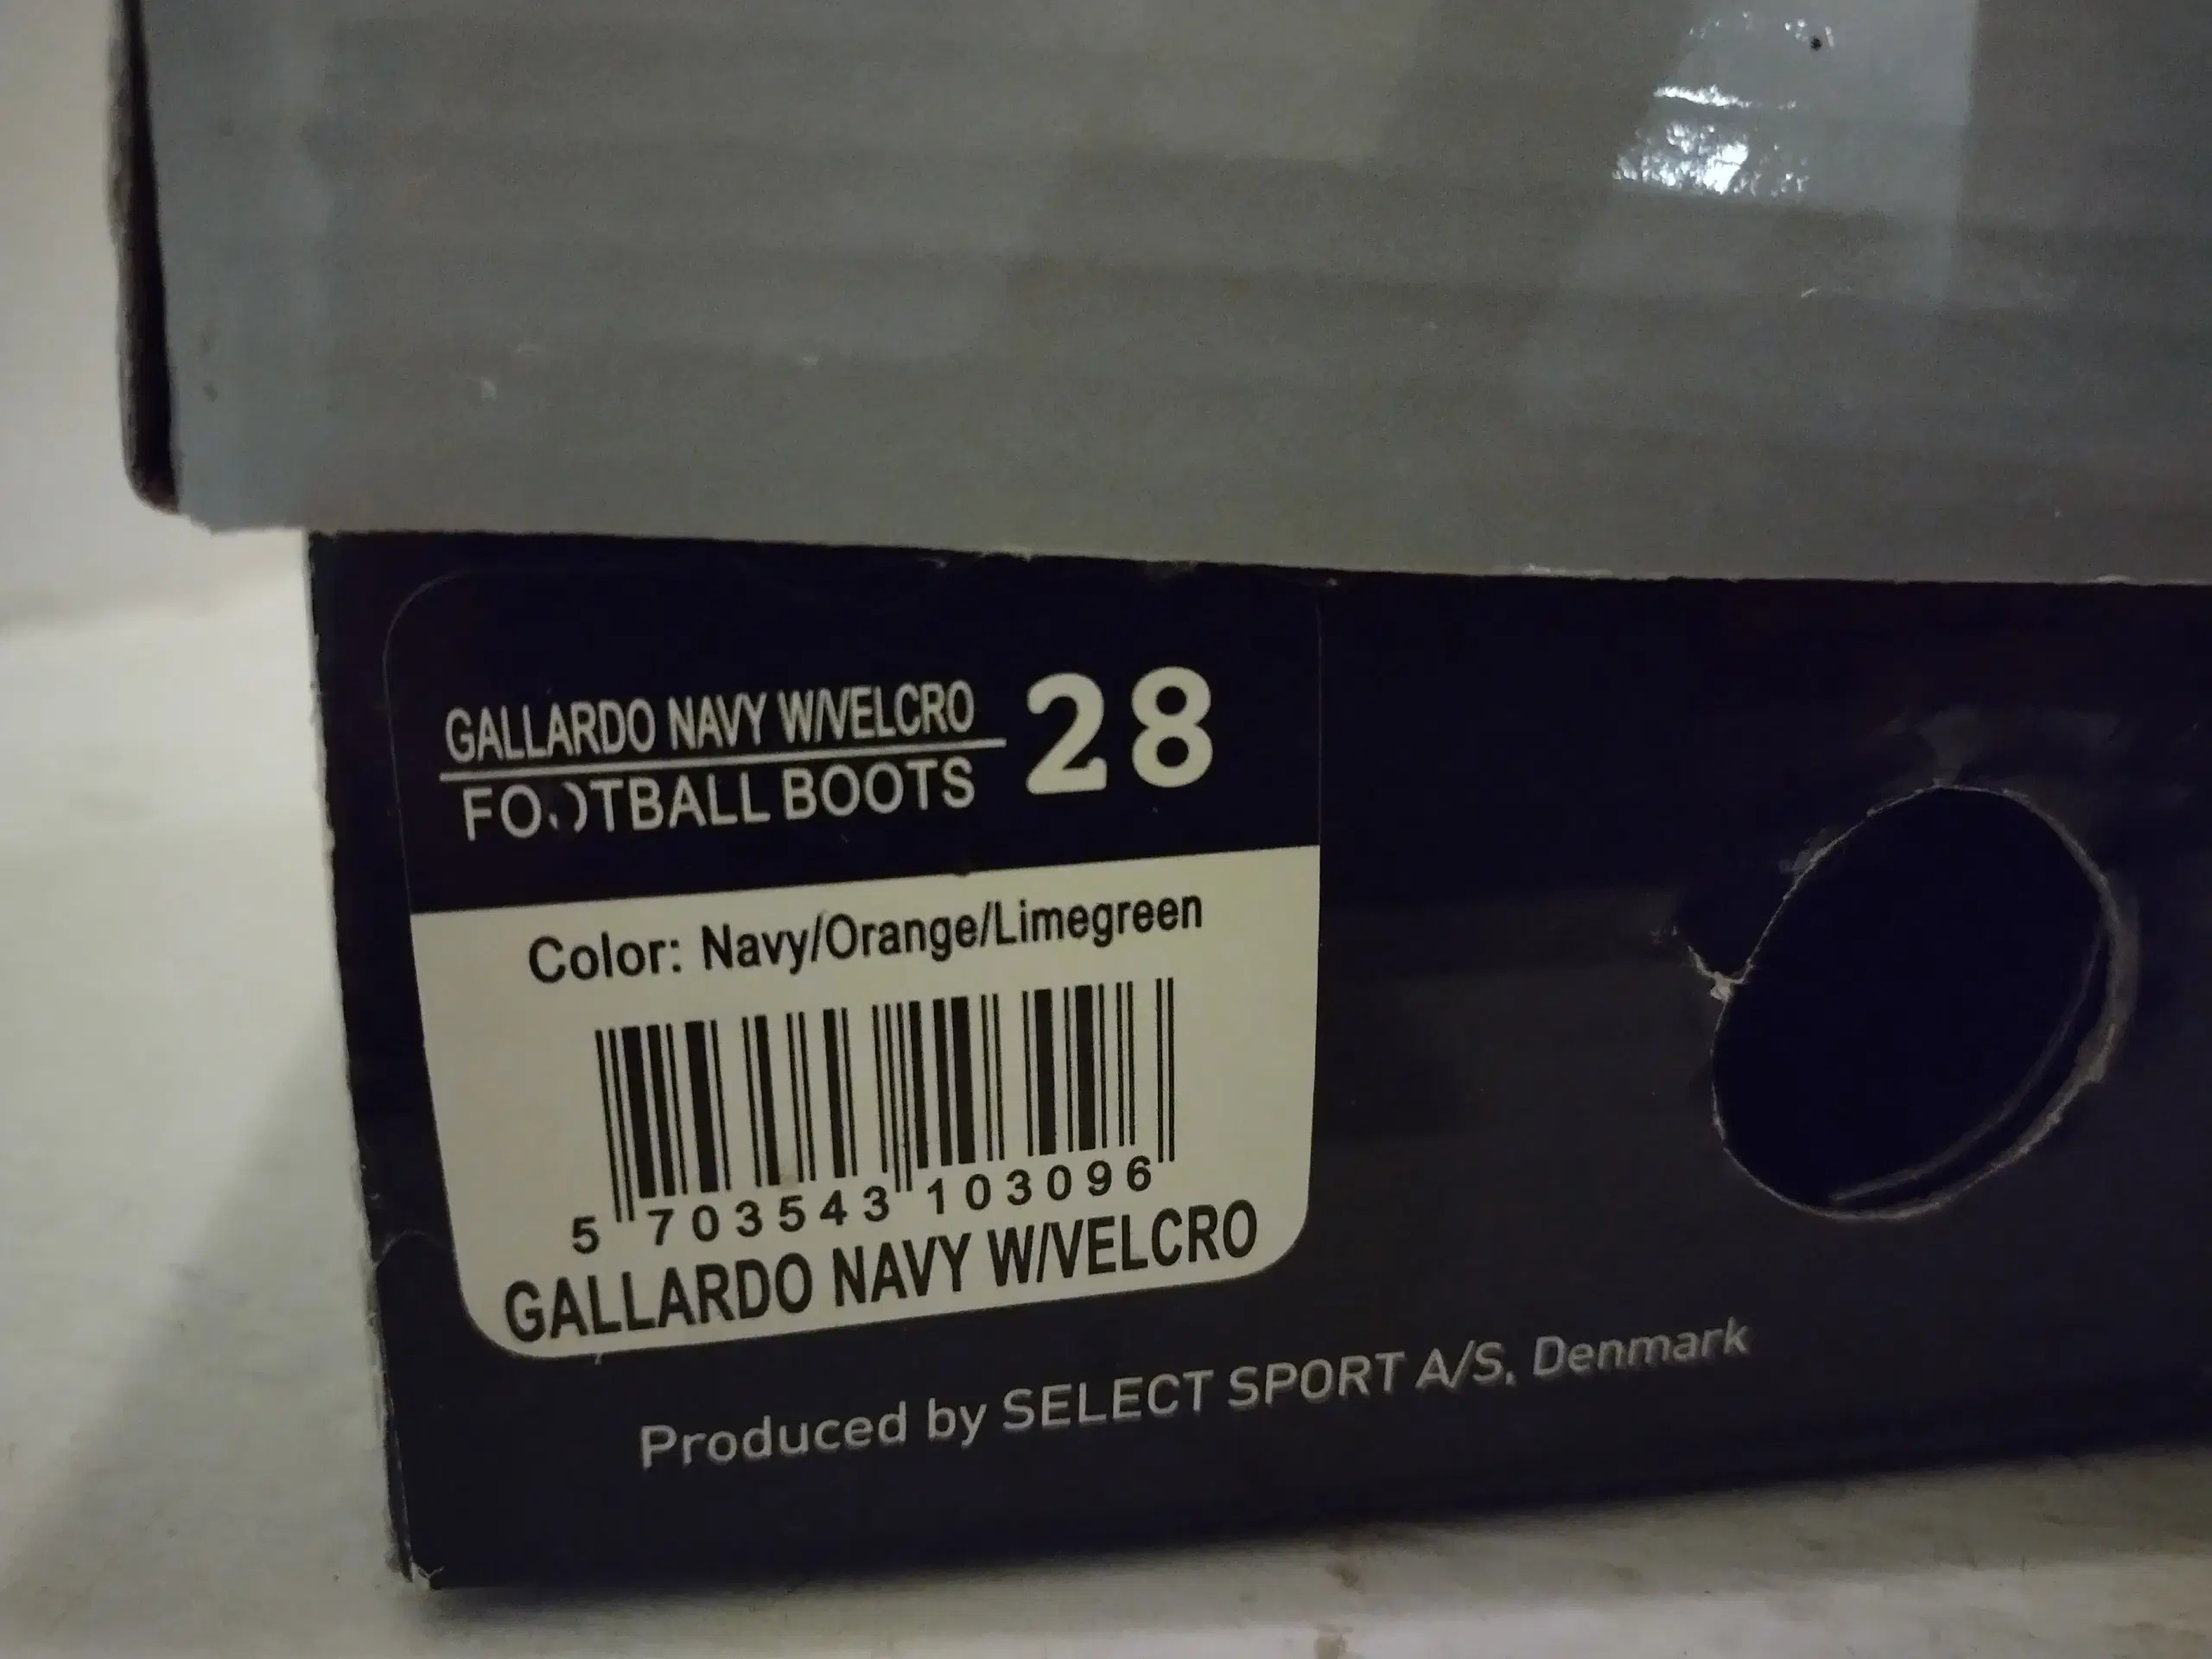 Select Gallardo Velcro FG Fodboldstøvler